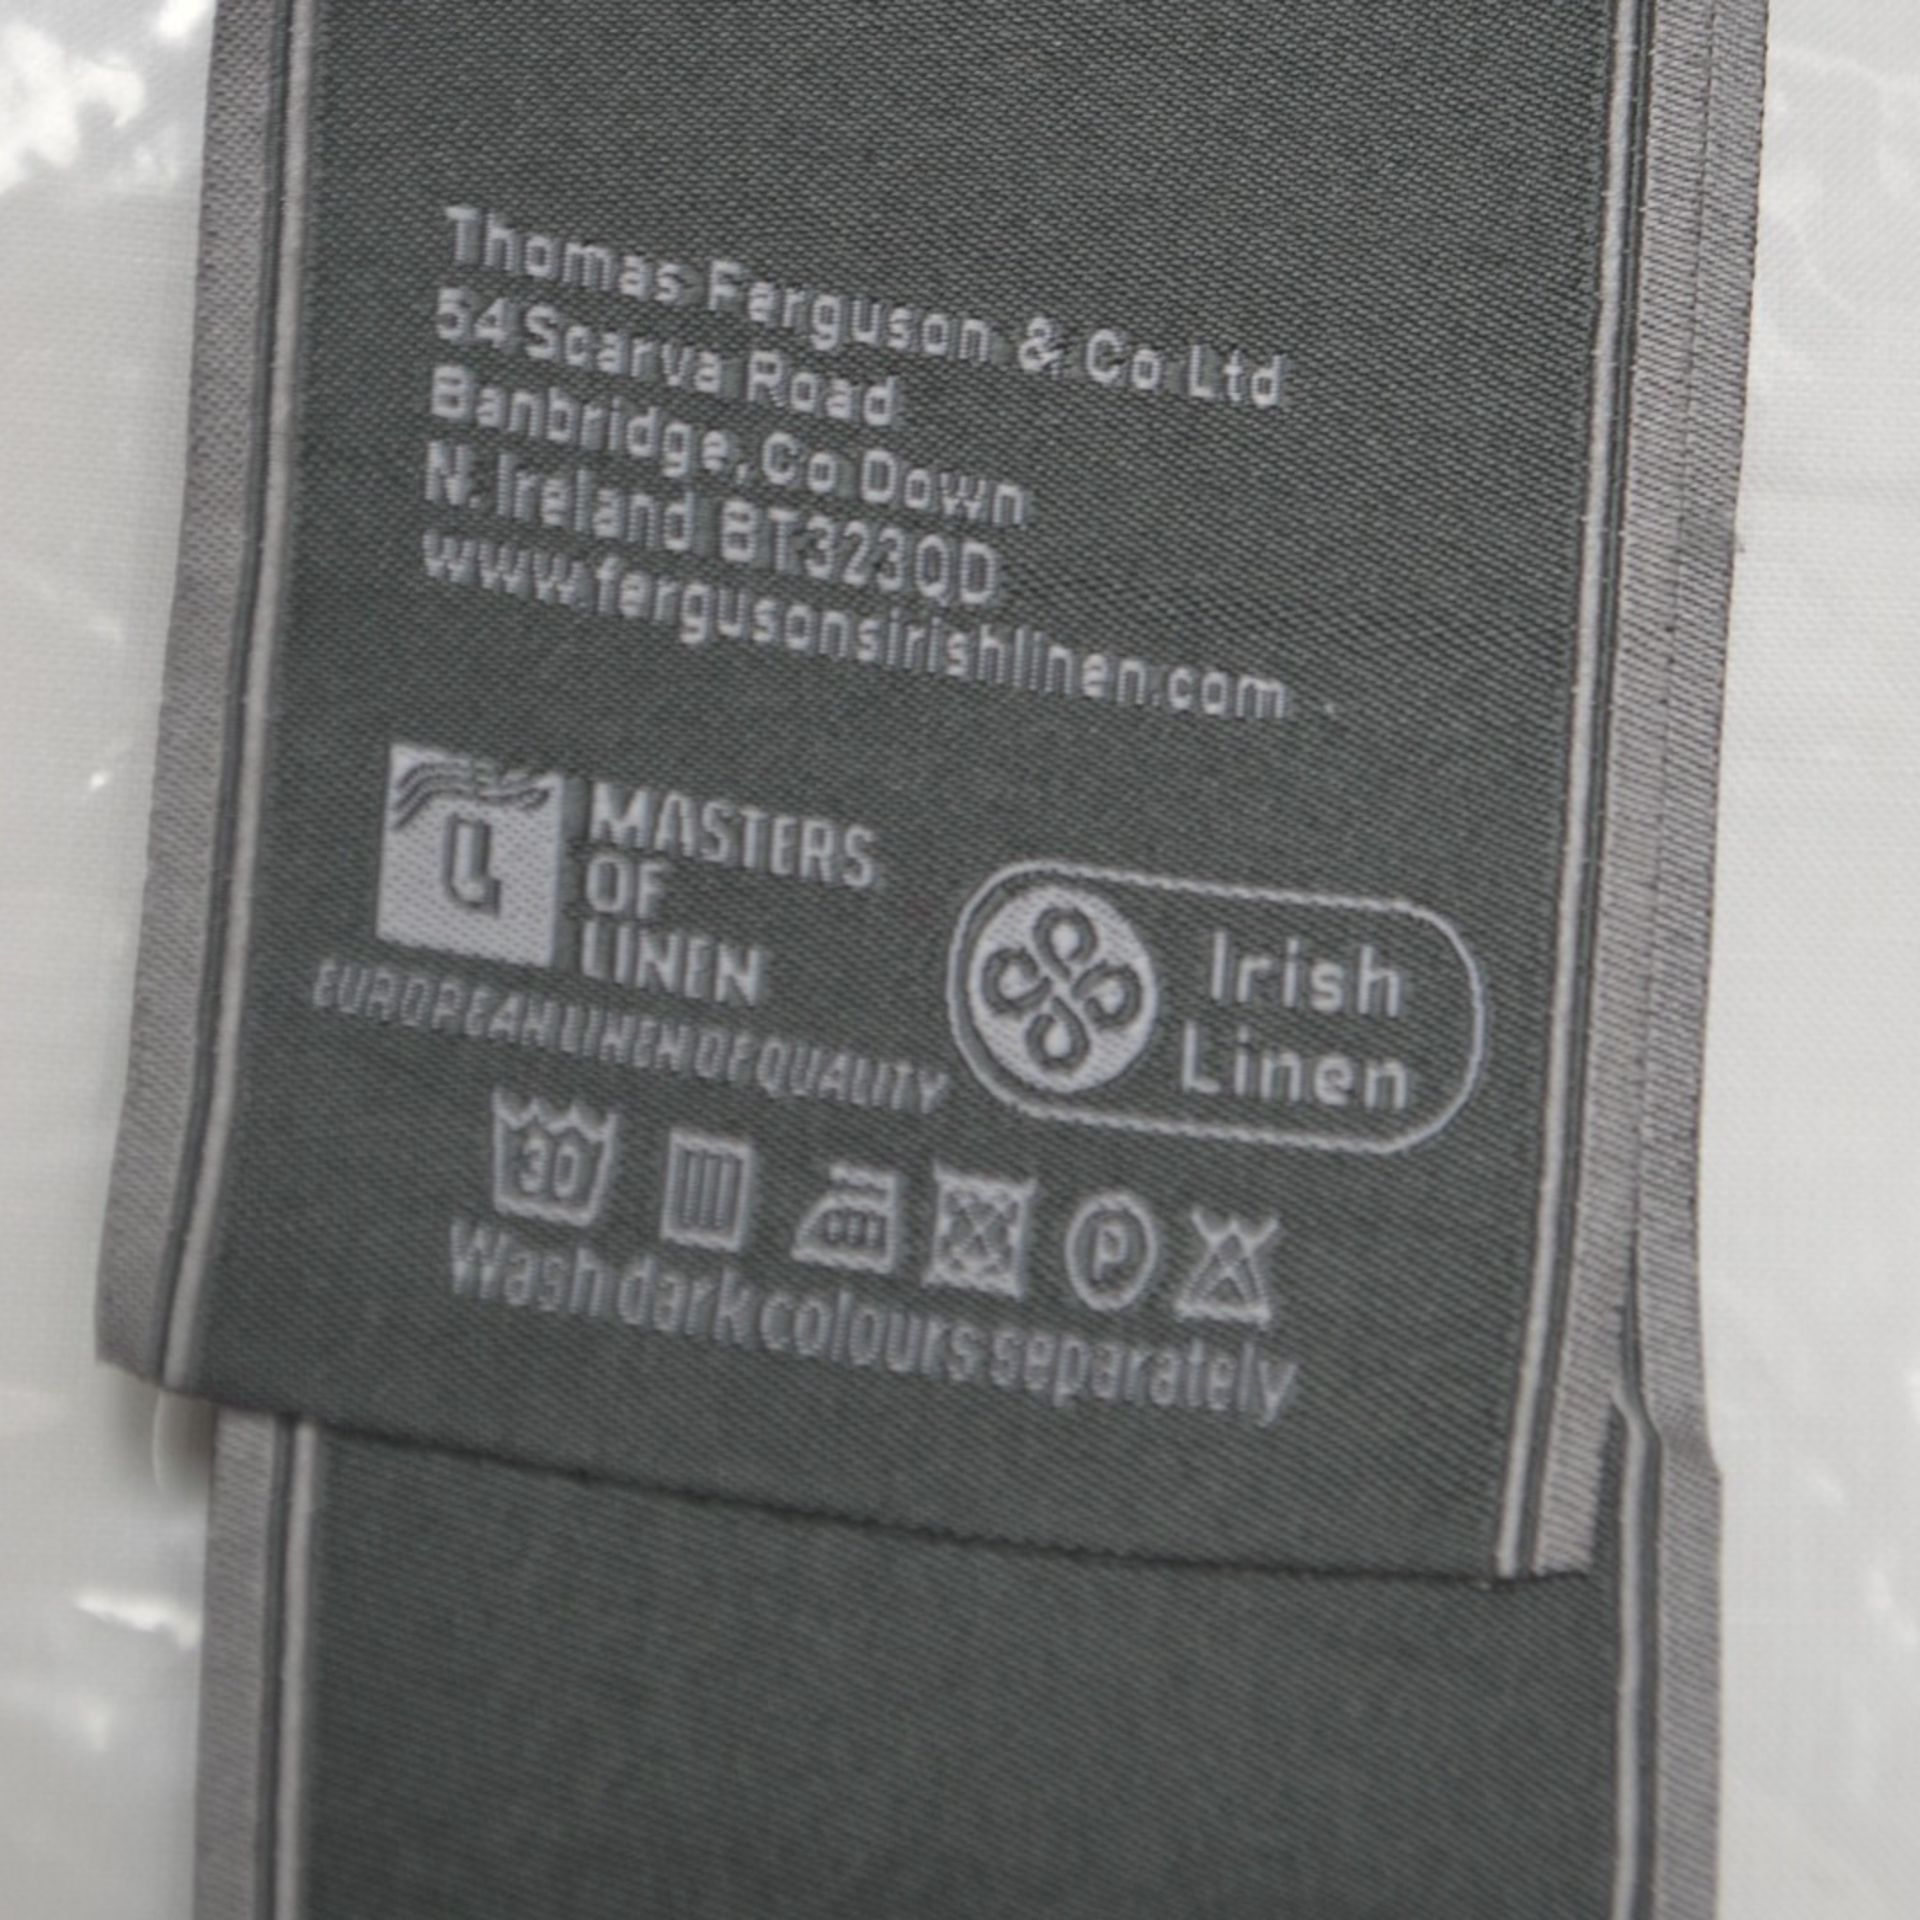 1 x Thomas Ferguson Irish Linen Table Cloth - Dimensions: 178 x 361cm - Ref: HHW69/JUL21/PAL-B - - Image 2 of 2